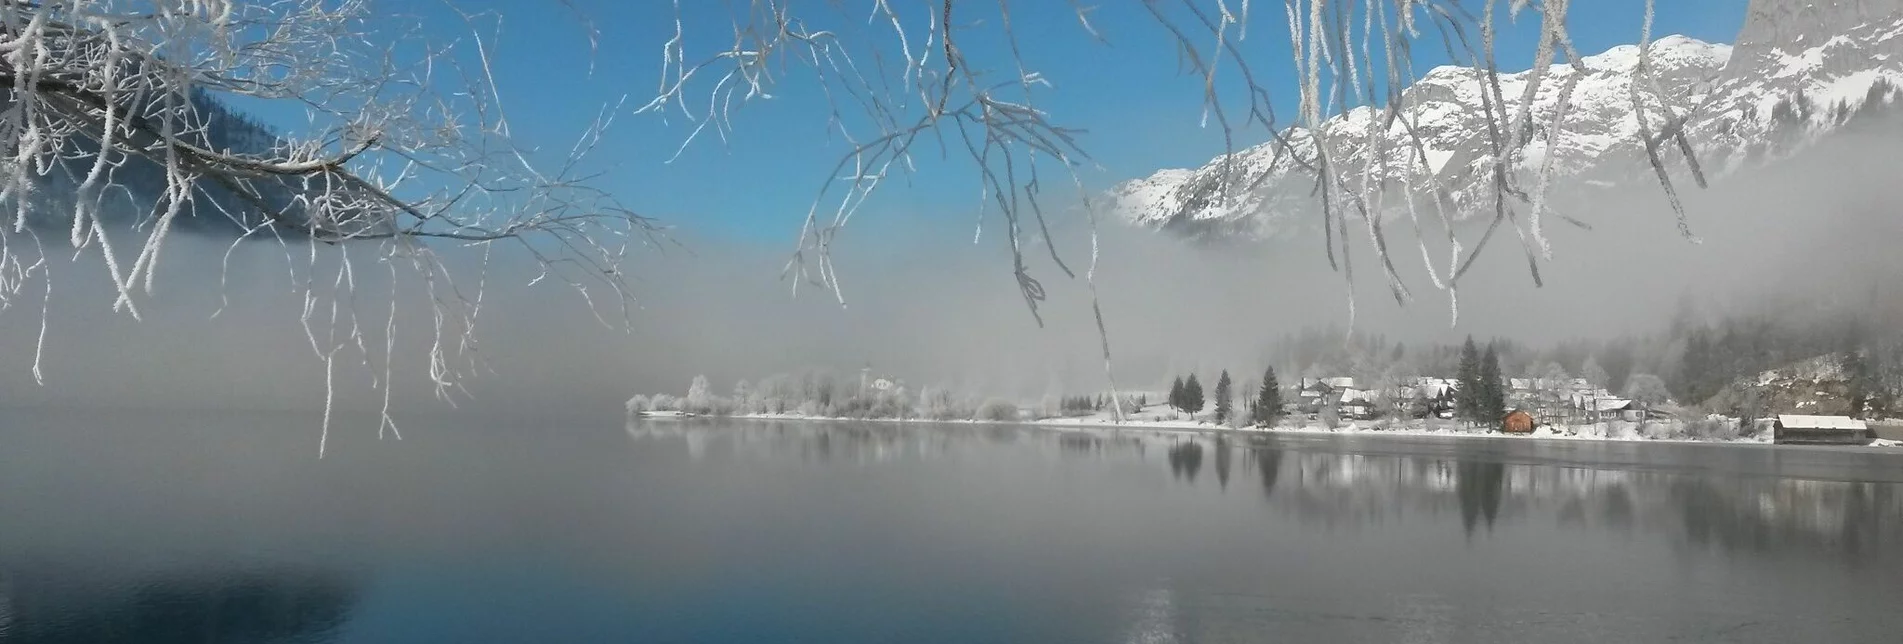 Winterwandern Winterwanderung von Gössl zum Toplitzsee - Touren-Impression #1 | © Ausseerland